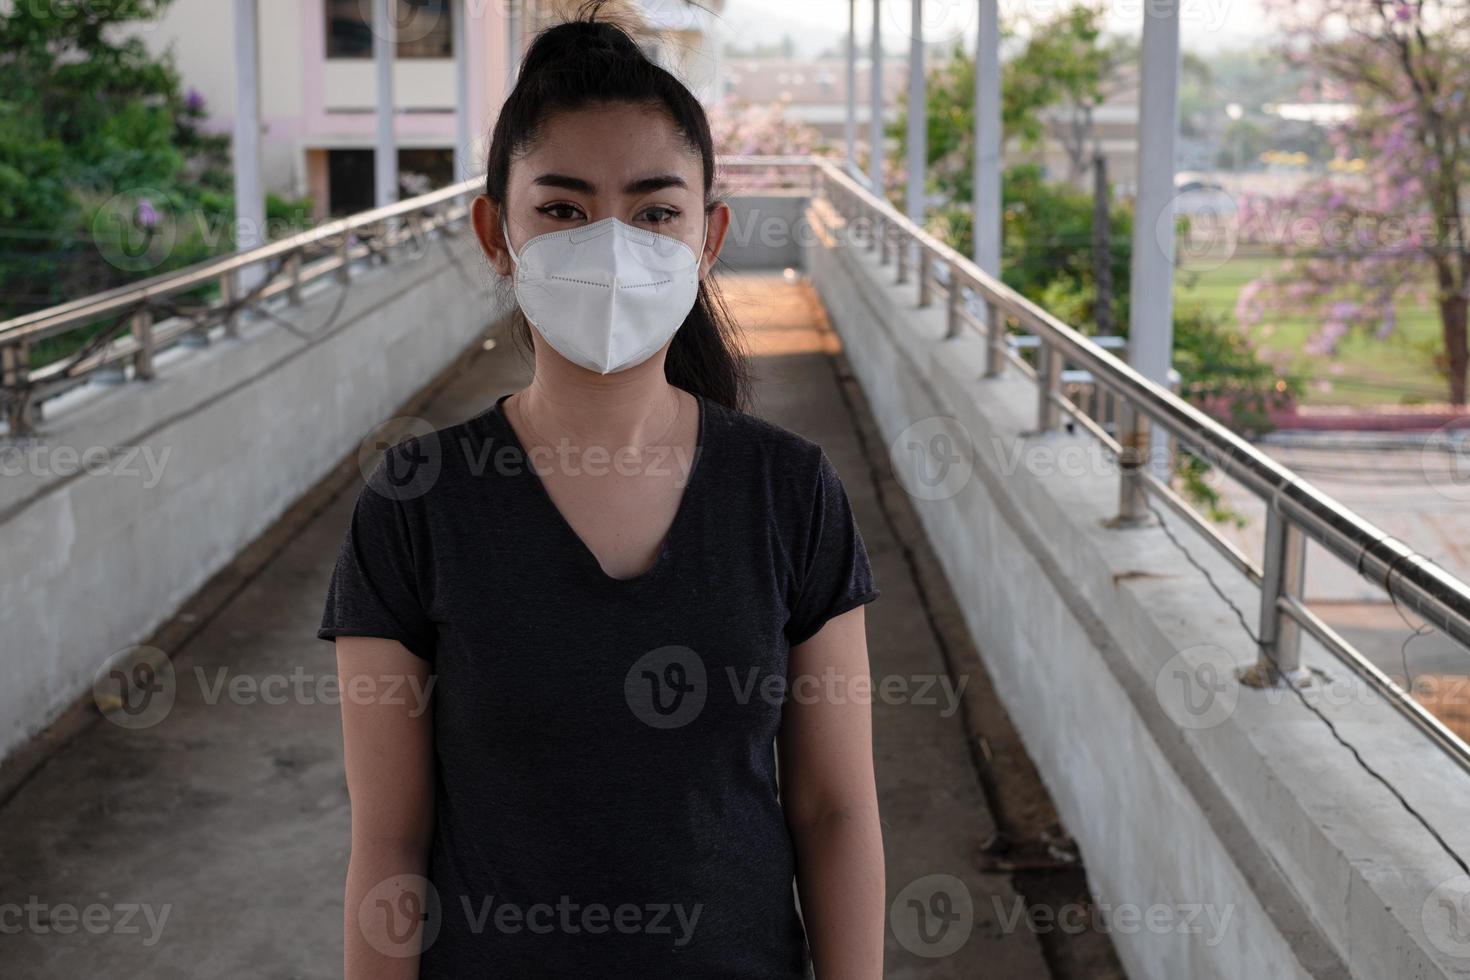 närbild av en kvinna som står och sätter på sig en respirator n95-mask för att skydda mot luftburna luftvägssjukdomar när influensa covid-19 coronavirus ebola pm2.5 damm och smog på vägen burrade bakgrunden foto